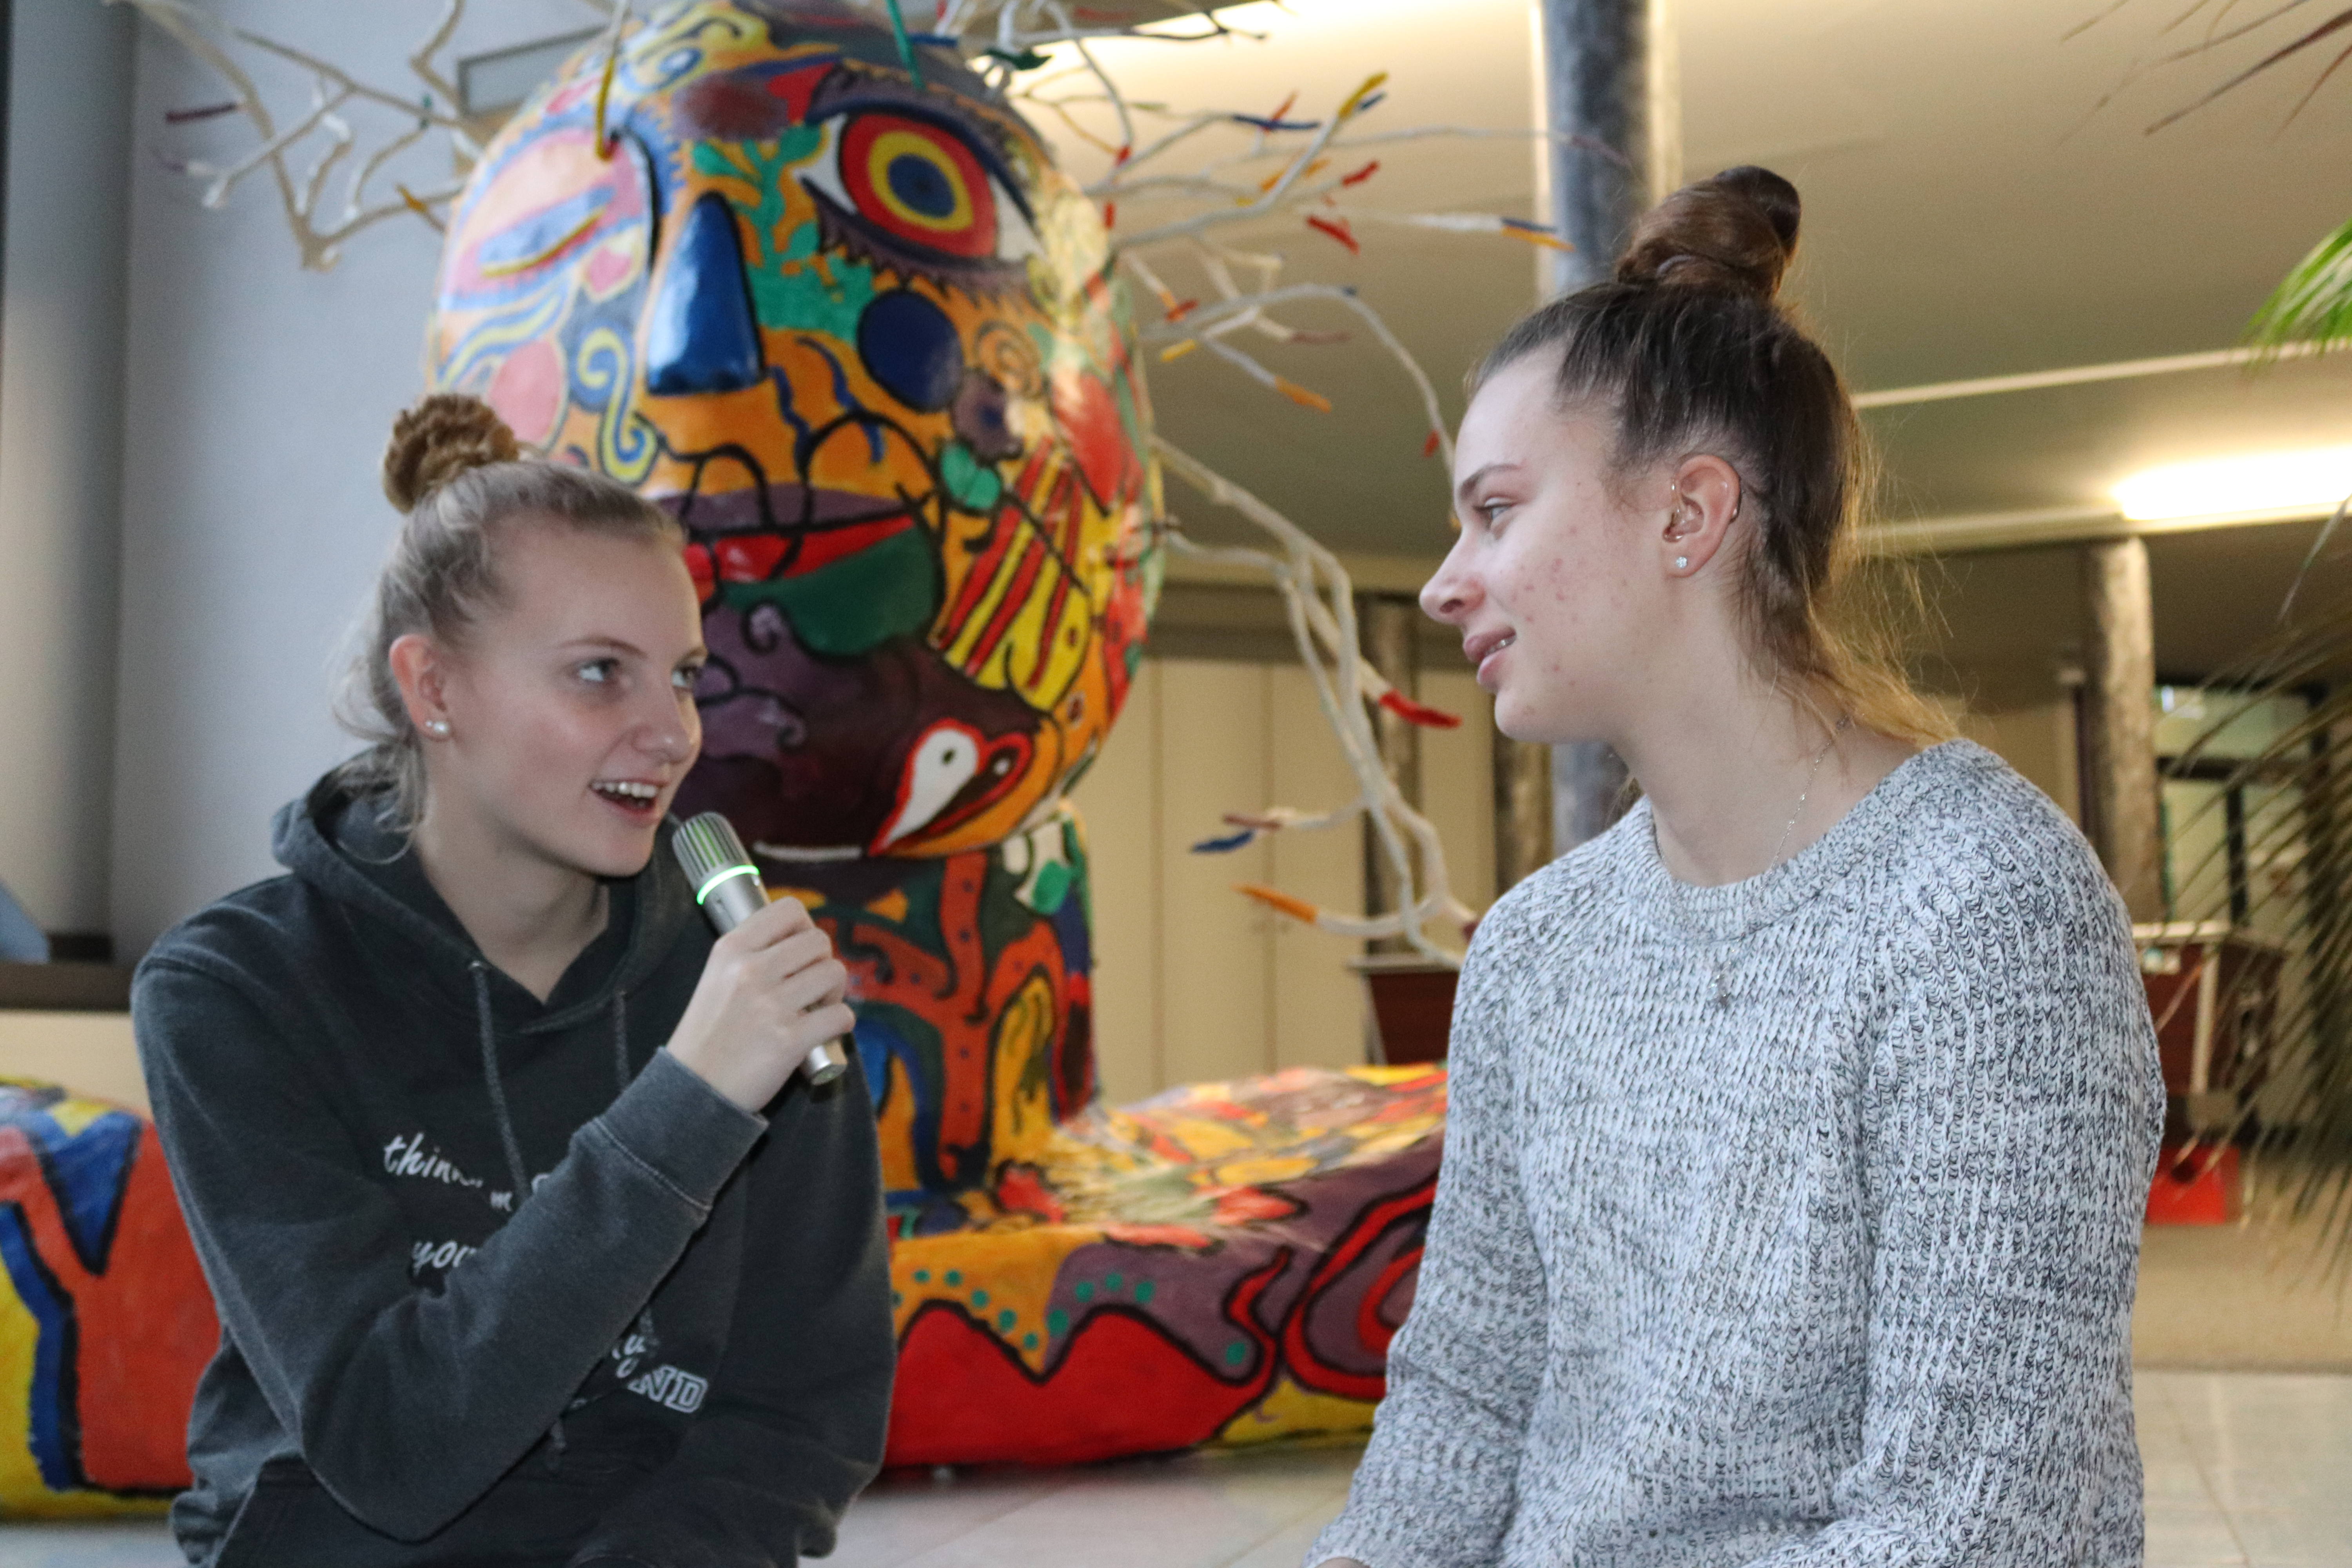 Zwei Schülerinnen im Gespräch – sichtbares Hörgerät, Mikrofon